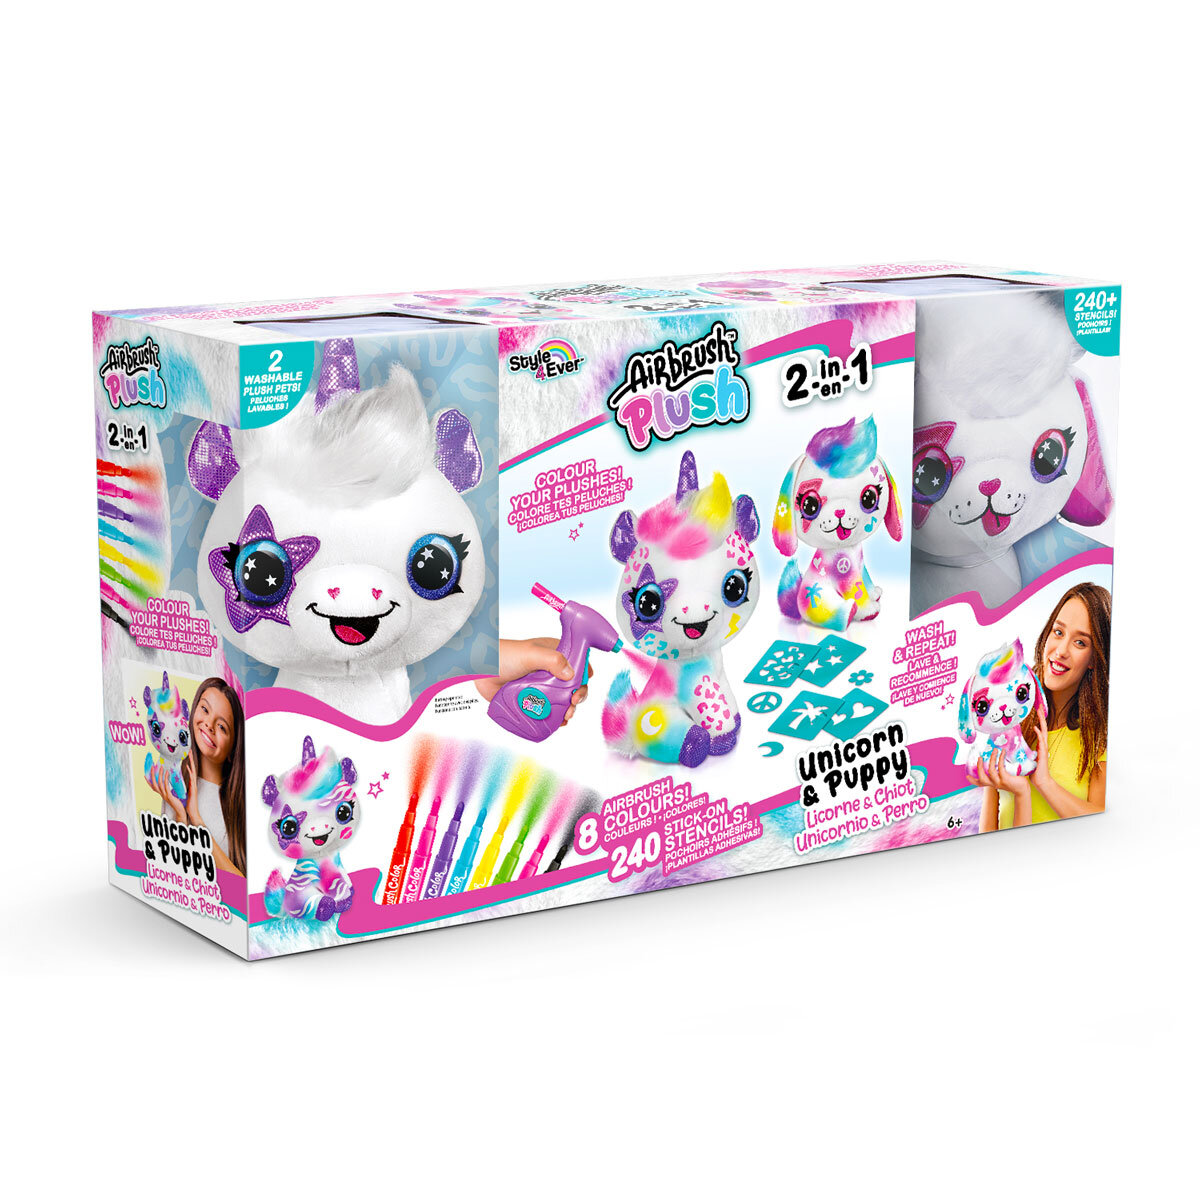 Airbrush Plush Unicorn & Puppy 2 Pack (6+ Years) | Costco UK